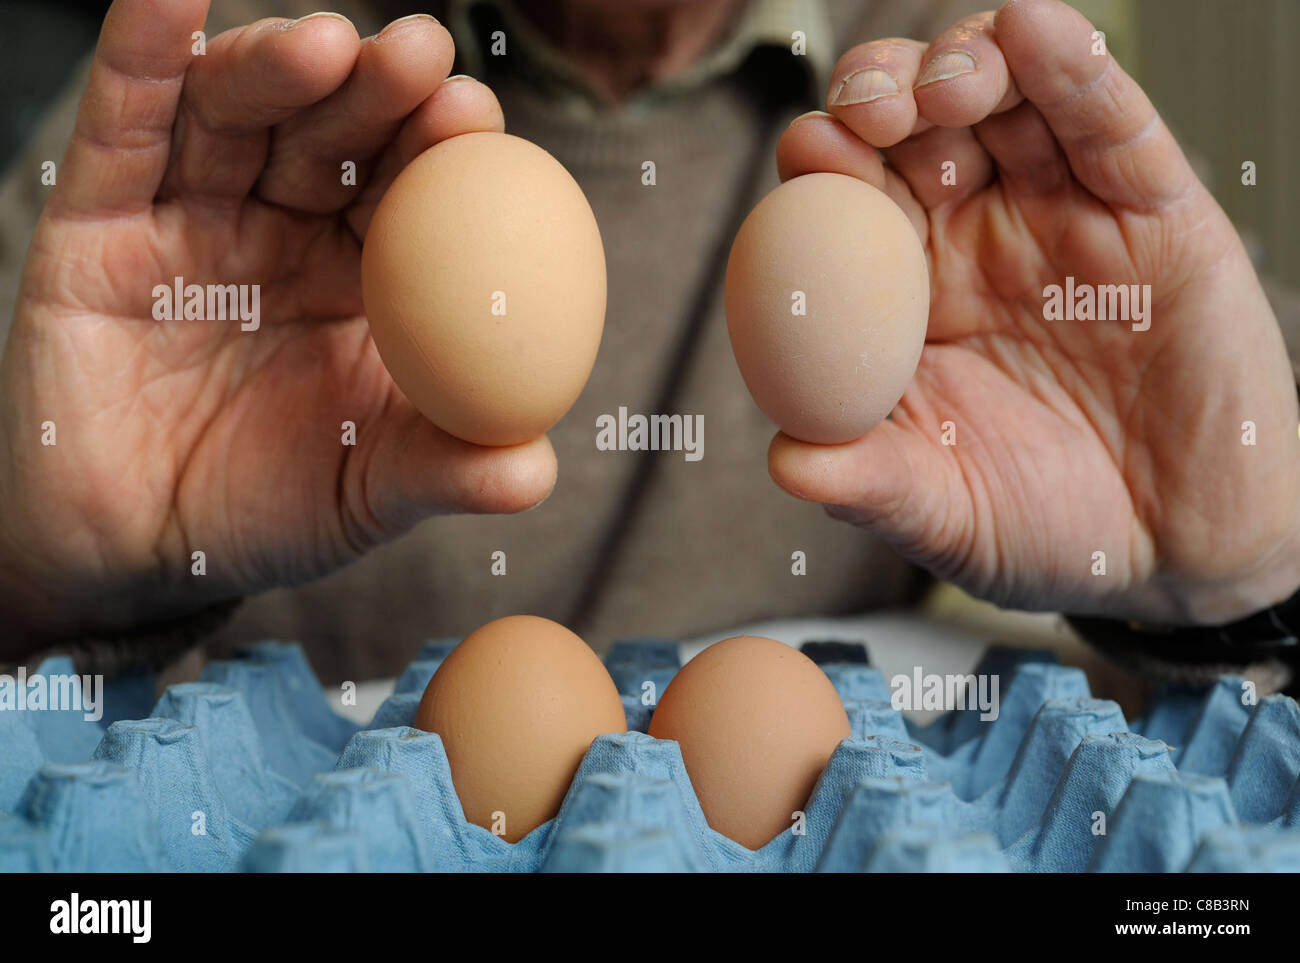 Re-Vorsitzender von The British Free Range Ei Producers Association, Tom Vesey, der glaubt, dass große Eier grausam, h ist Stockfoto